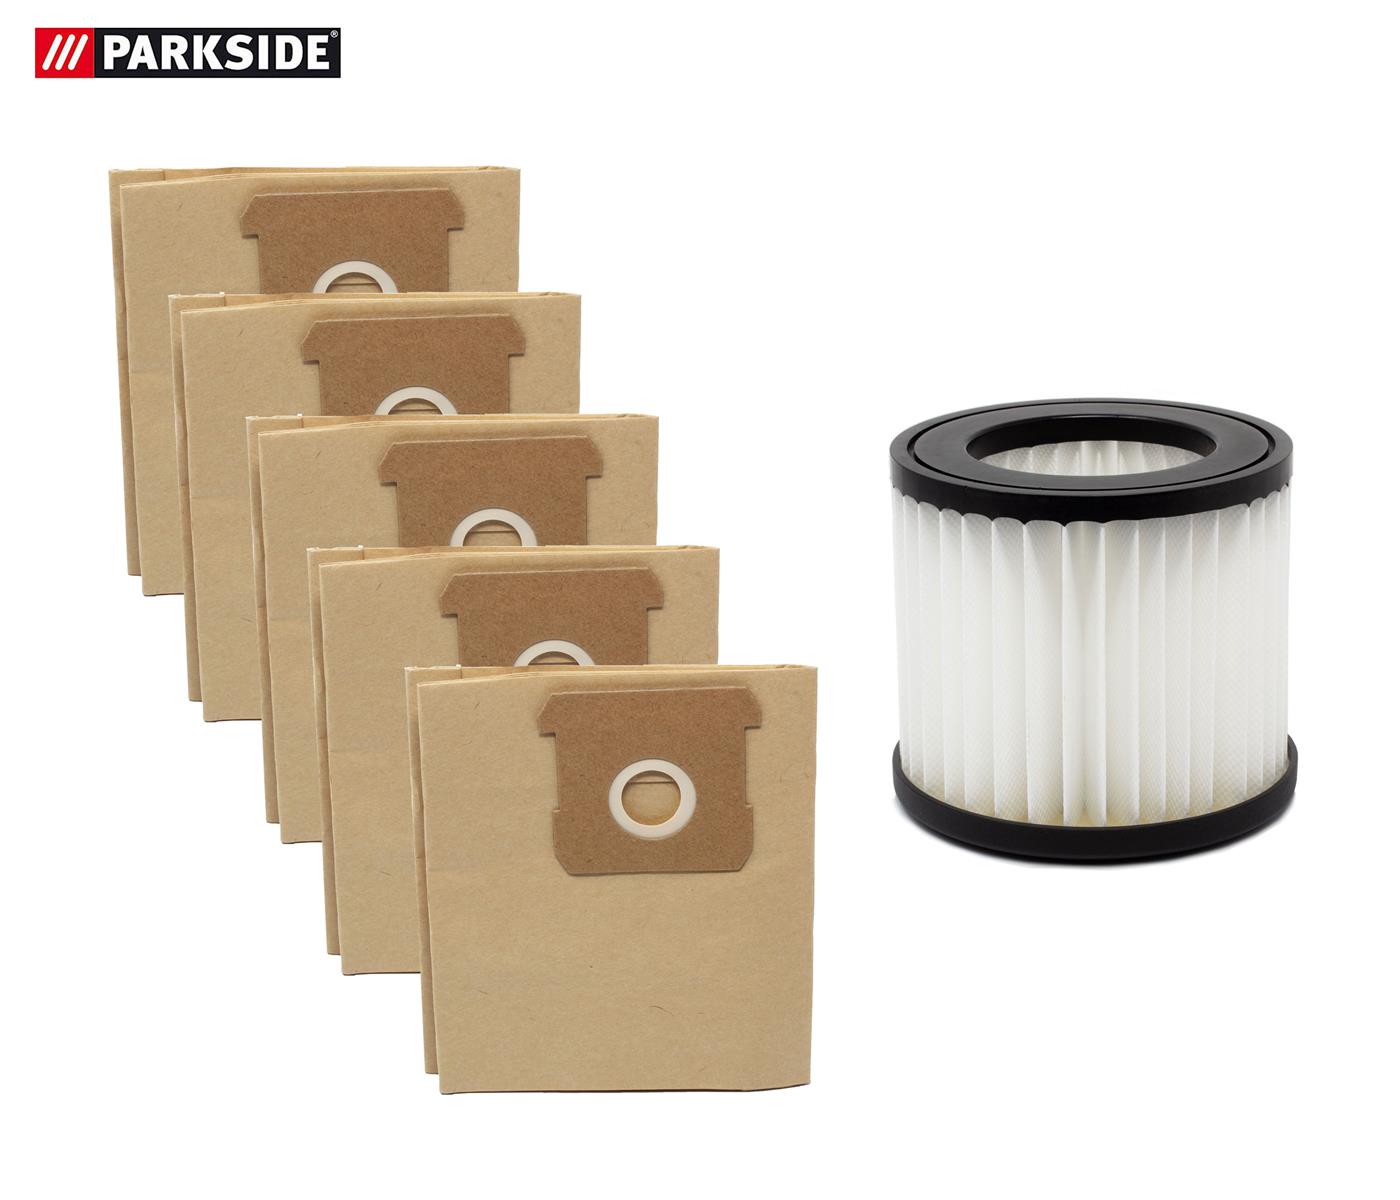 5 Staubsaugerbeutel Filter passend für Parkside PNTS 1250 bis 1500 